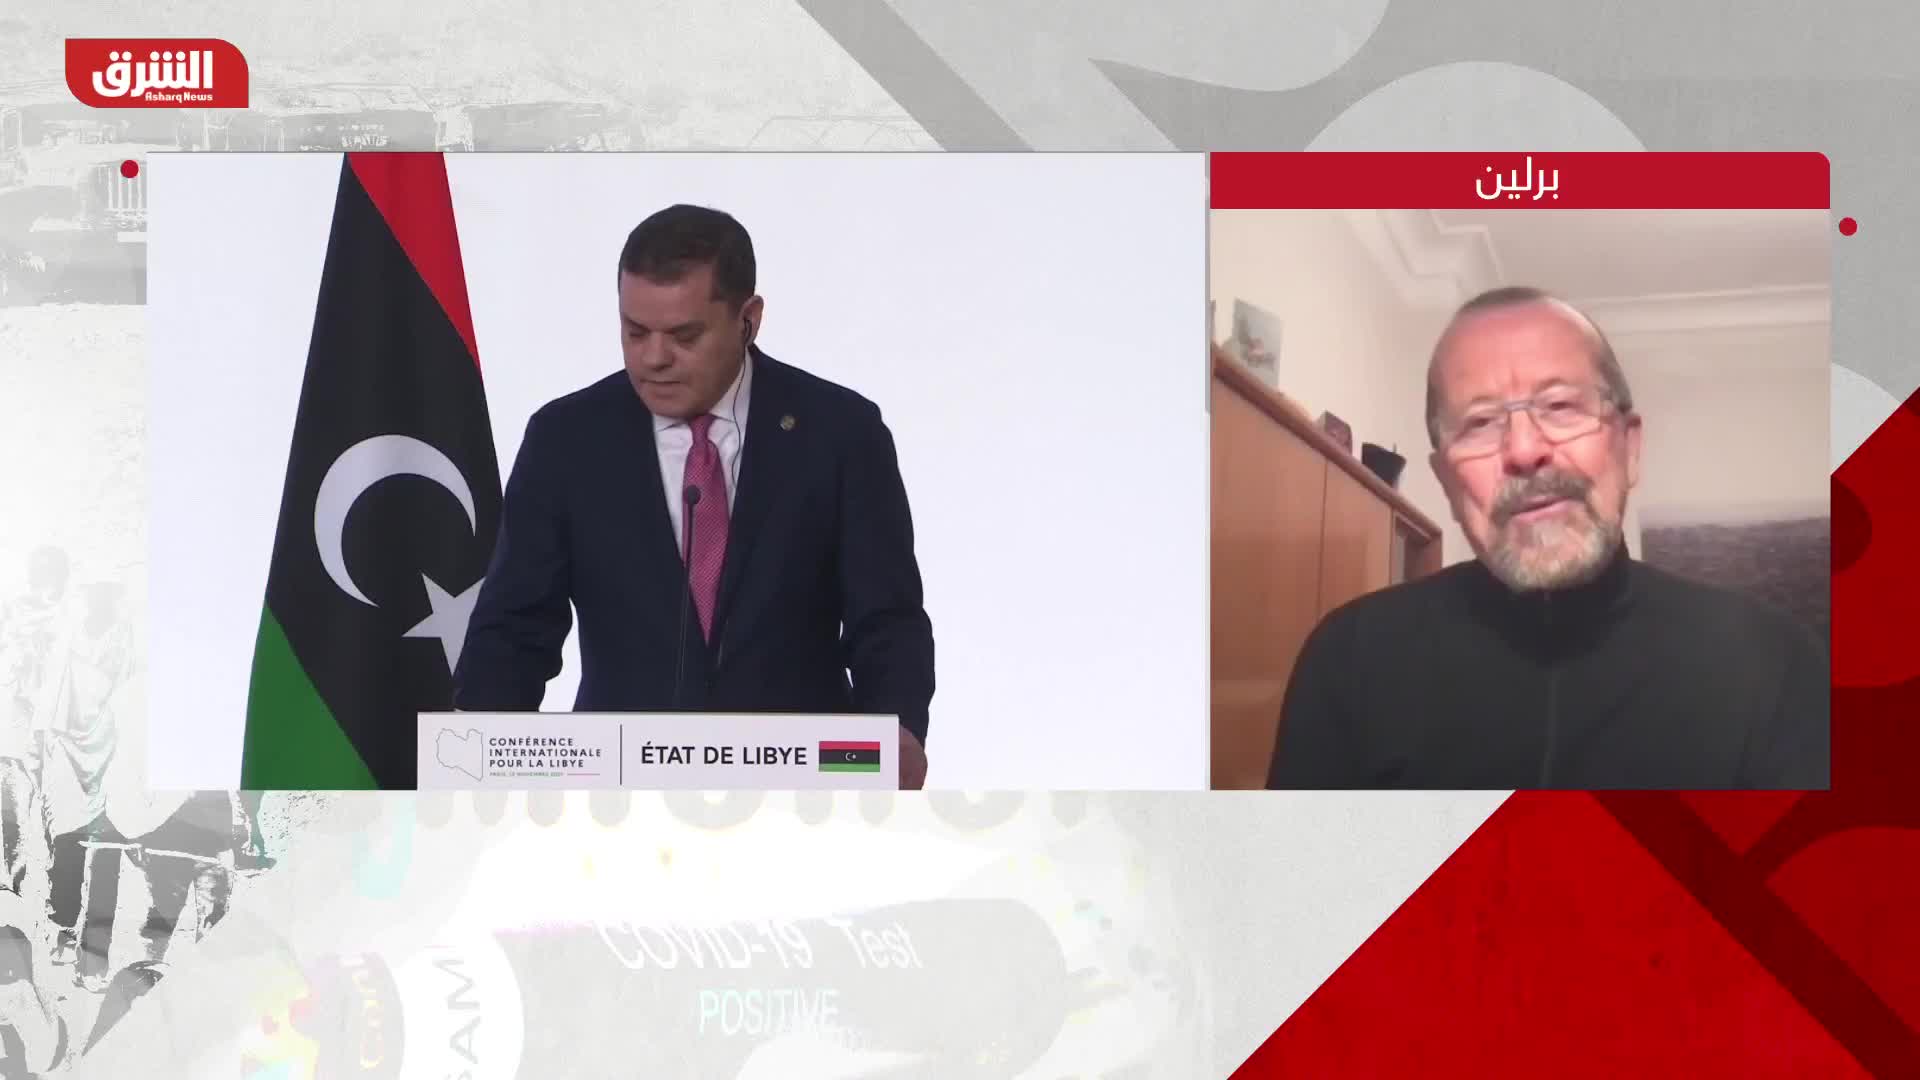 مارتن كوبلر: بعض الأطراف في ليبيا ترفض الانتخابات خوفاً من خسارة الحُكم